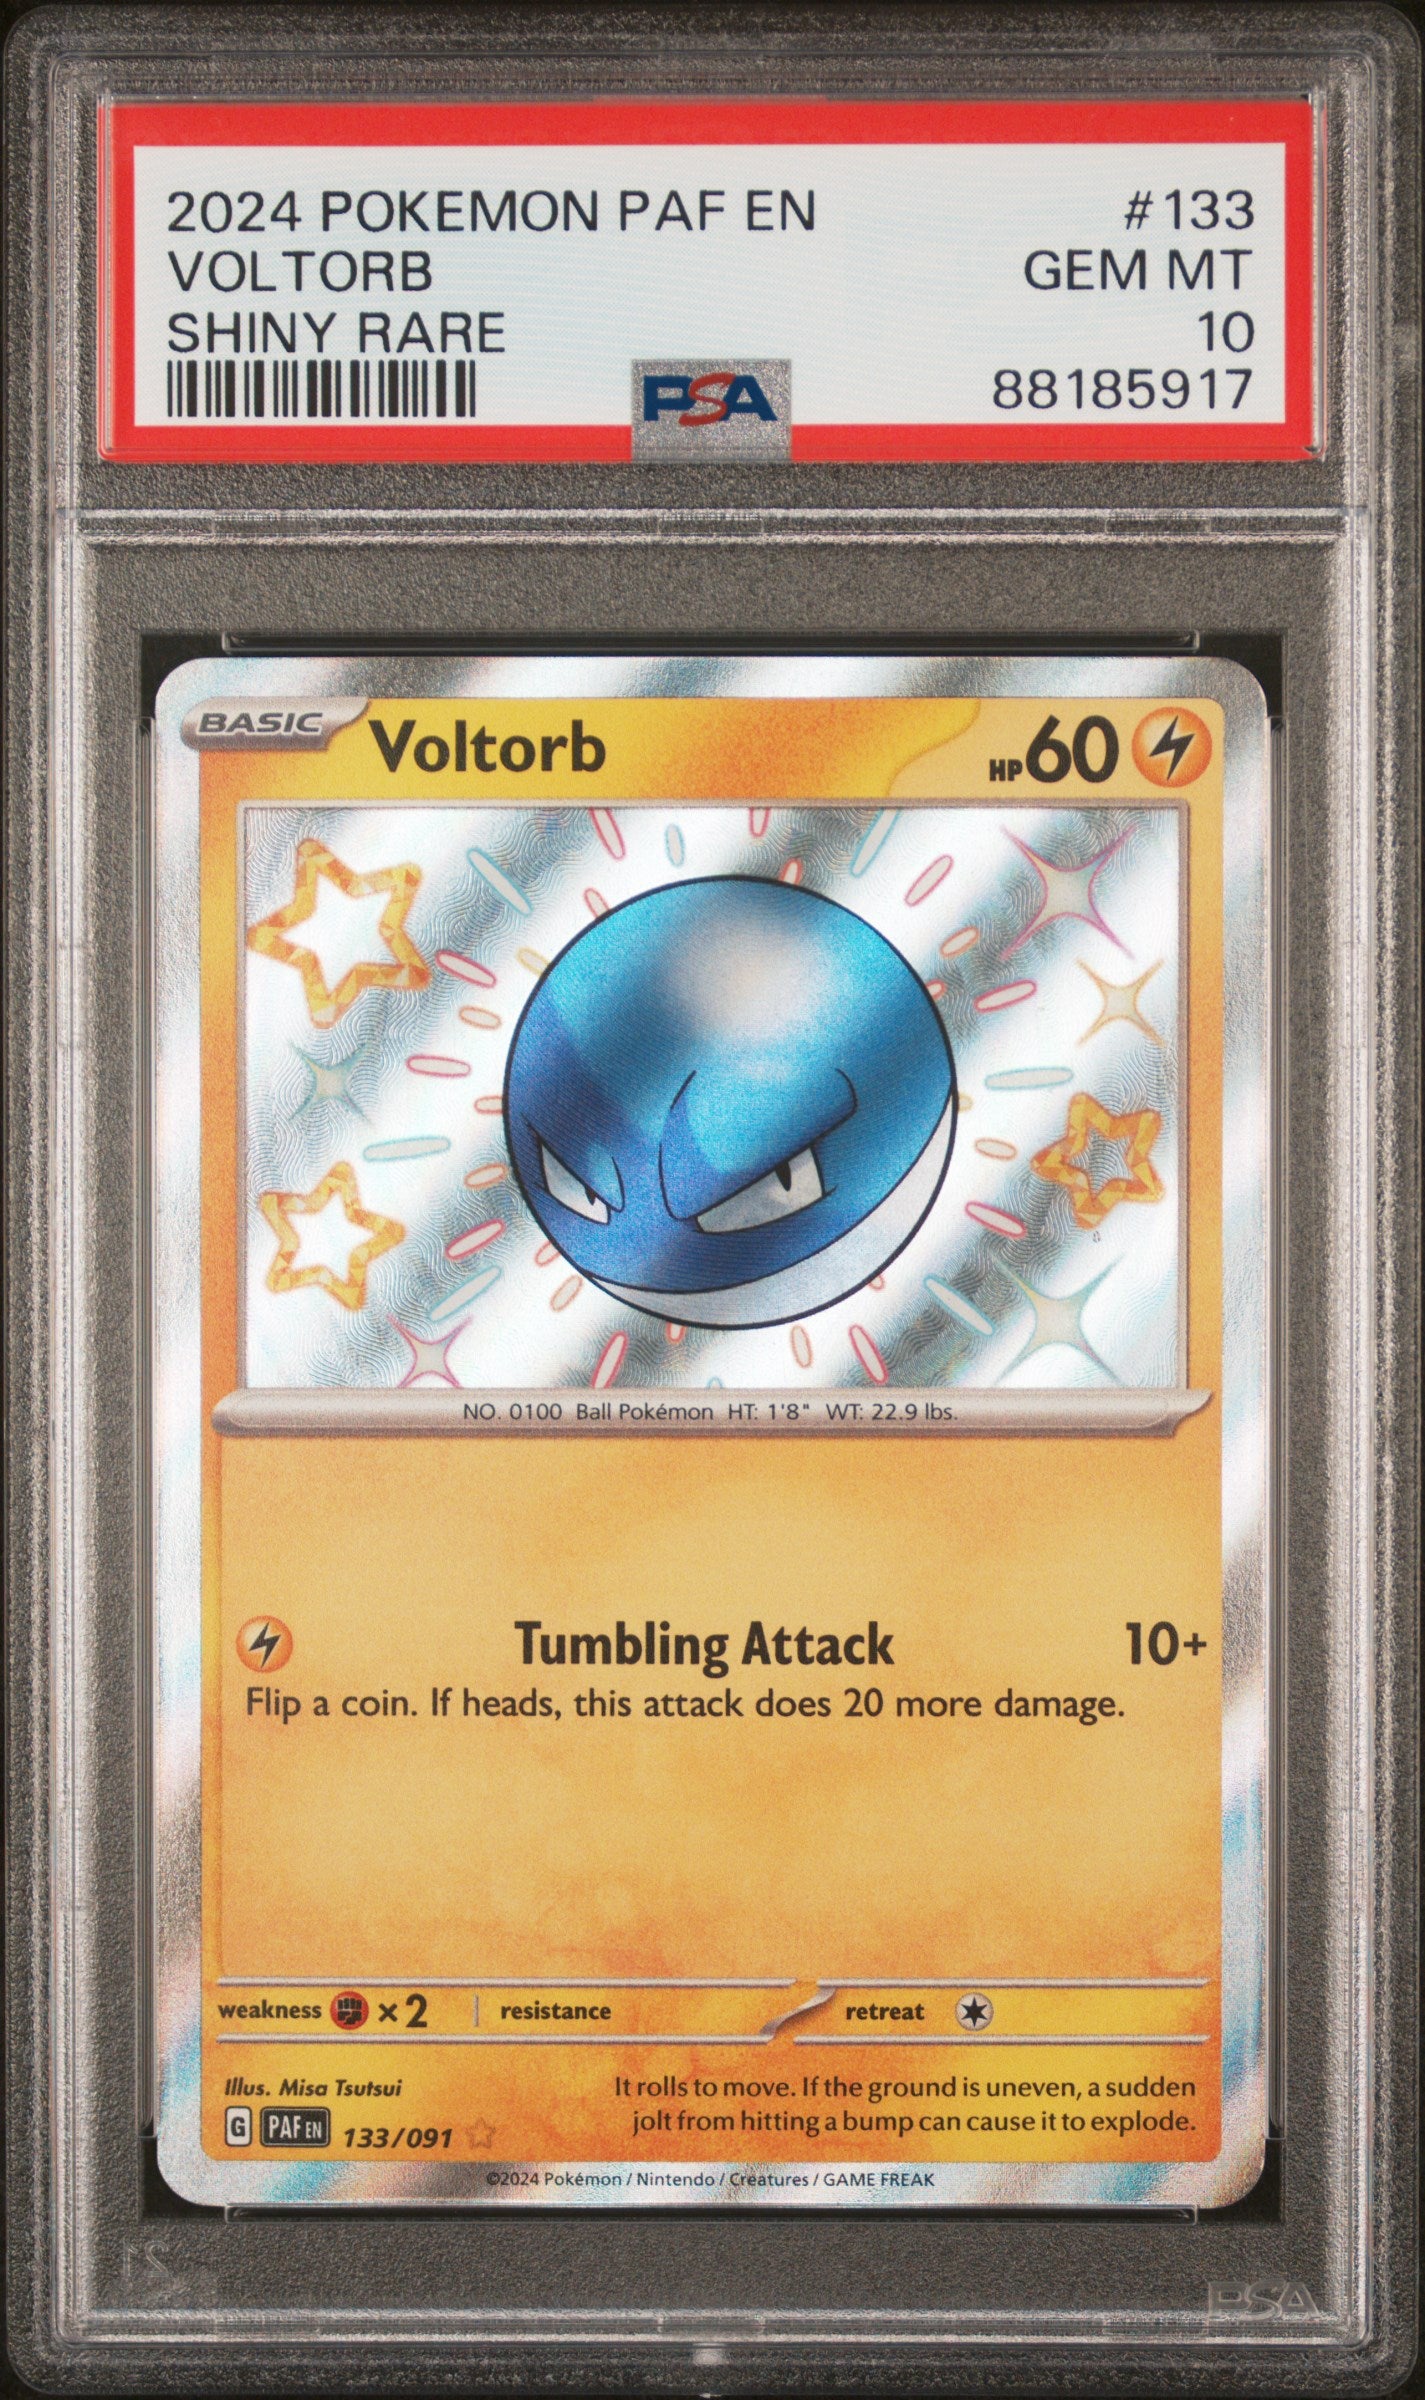 Pokémon - Voltorb Paldean Fates 133/091 (Shiny Rare) - PSA 10 (GEM-MINT)